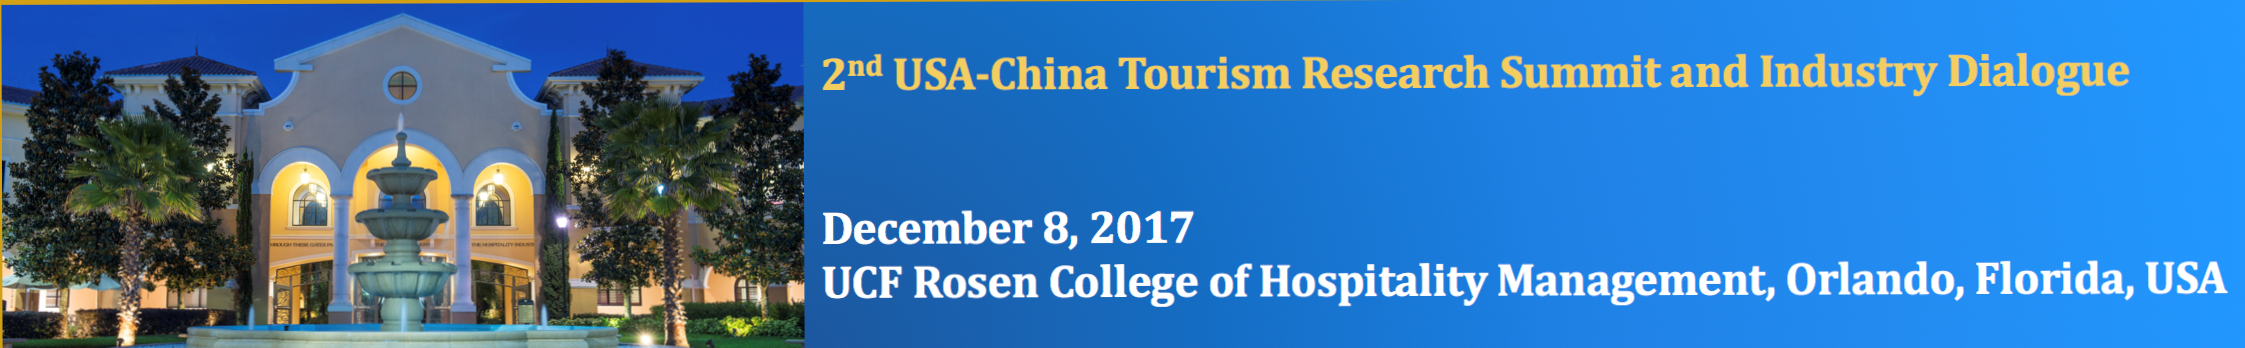 2nd USA-China Tourism Research Summit Photos